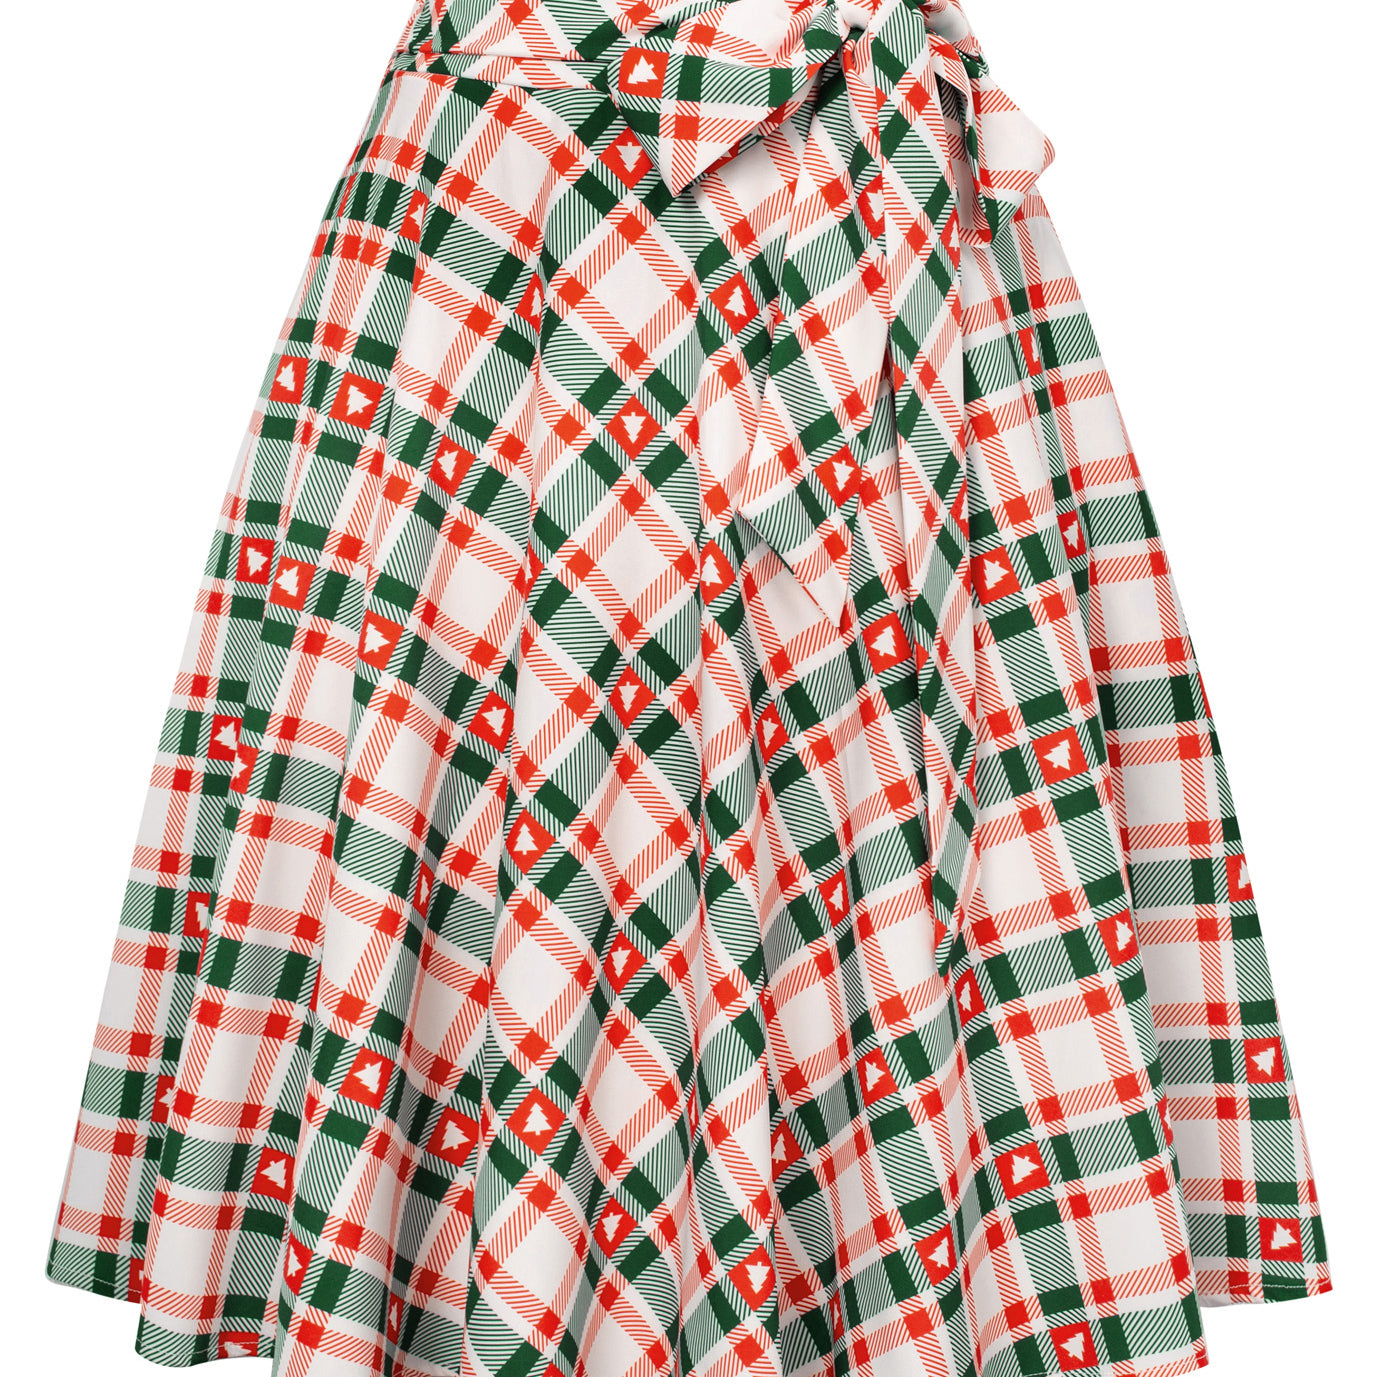 Seckill Offer⌛Buttons Decorated Plaid Patterns Elastic Waist High Waist Swing A-Line Skirt